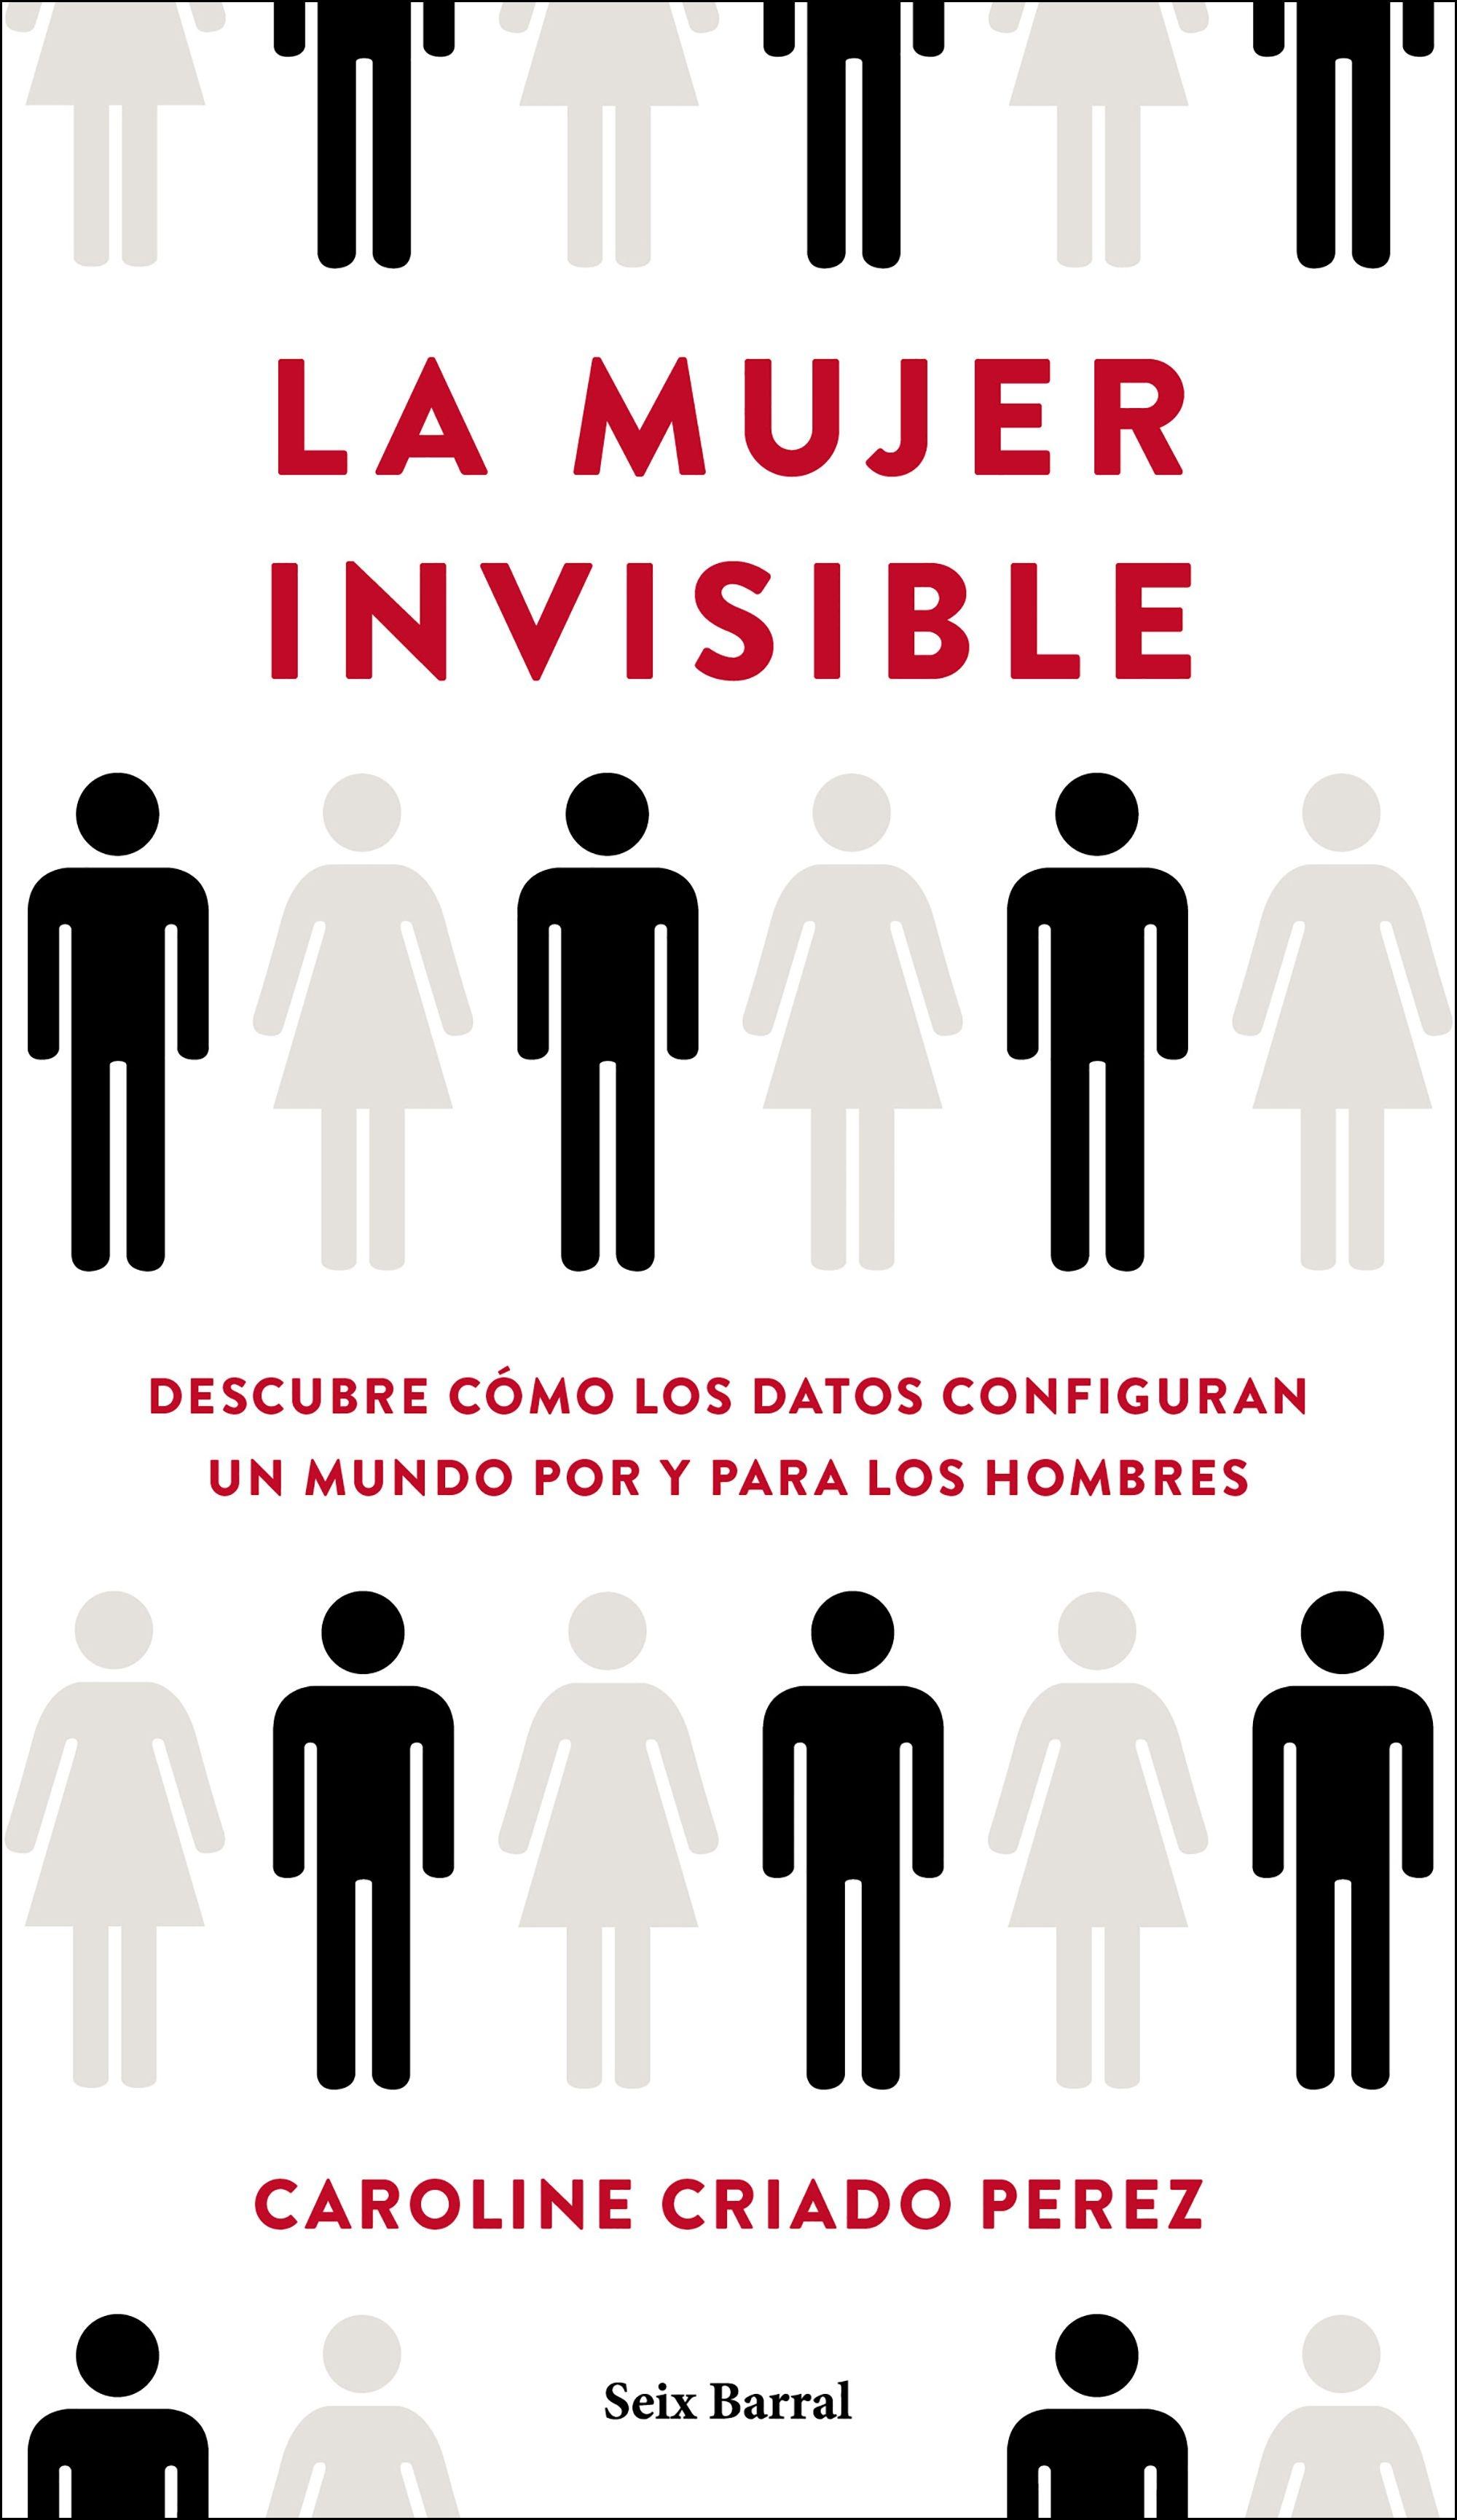 La Mujer Invisible "Descubre Cómo los Datos Configuran un Mundo Hecho por y para los Hombres". 